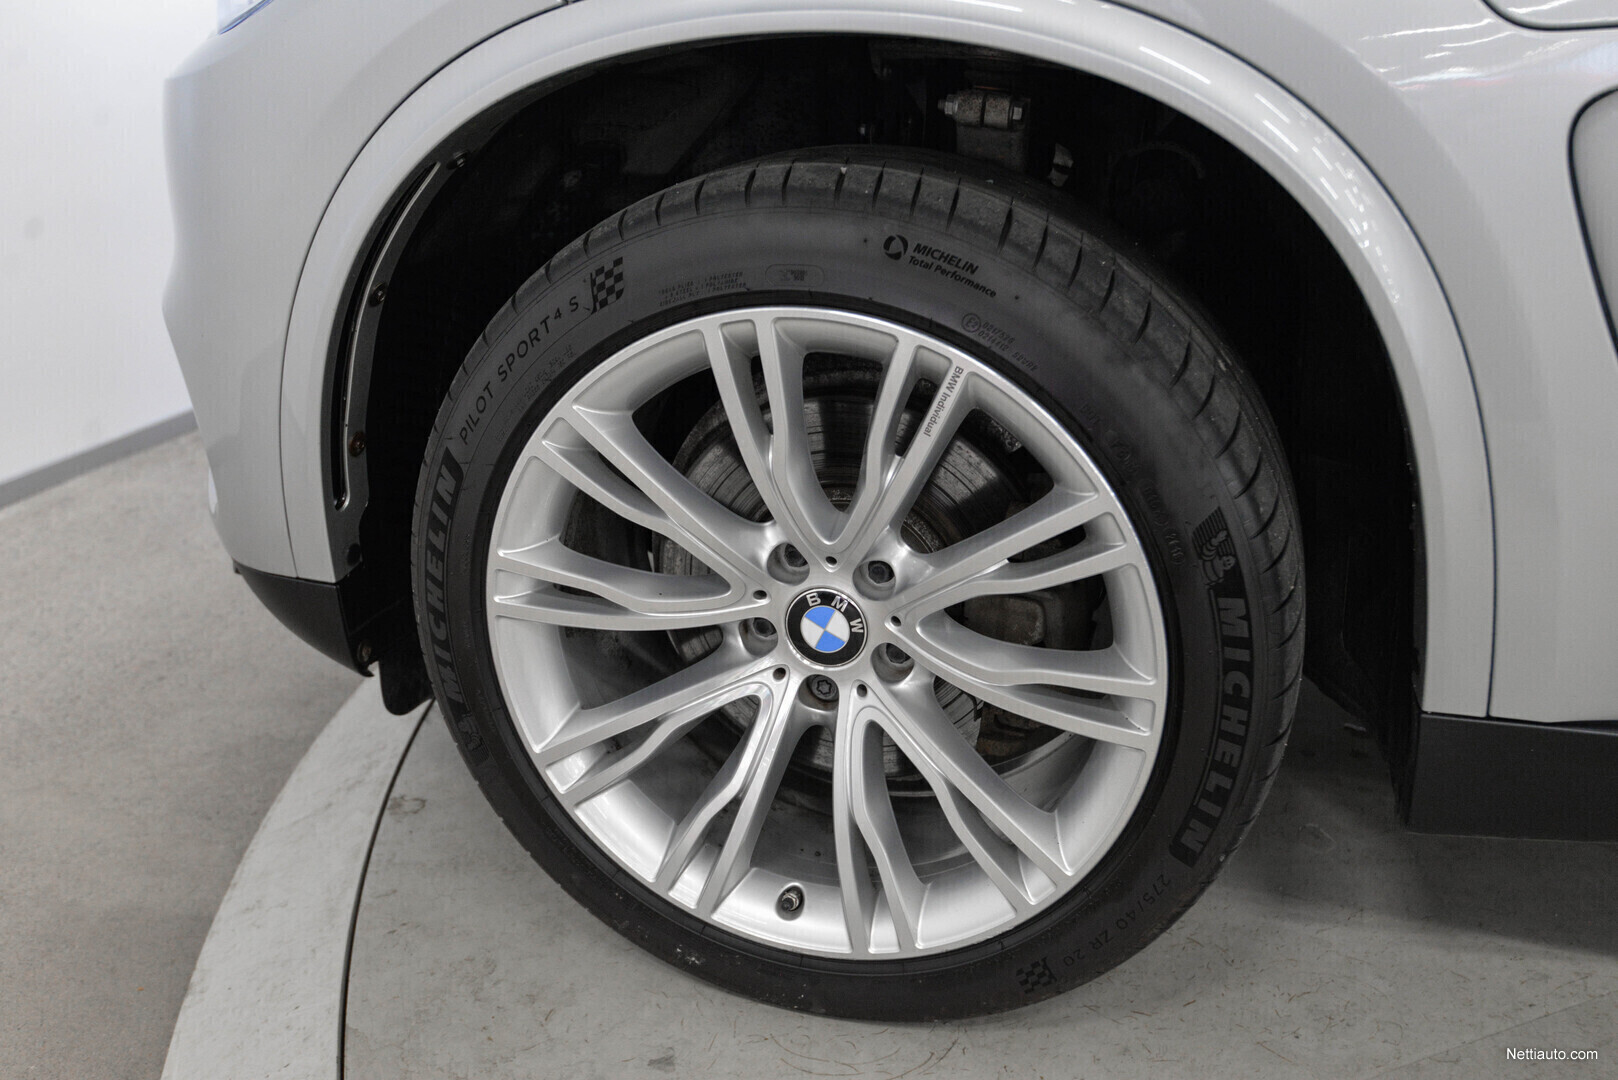 BMW X5 F15 xDrive40e A - Comfort istuimet, Panorama, Harman / Kardon,  Comfort Access, huippusiisti! Maastoauto 2016 - Vaihtoauto - Nettiauto